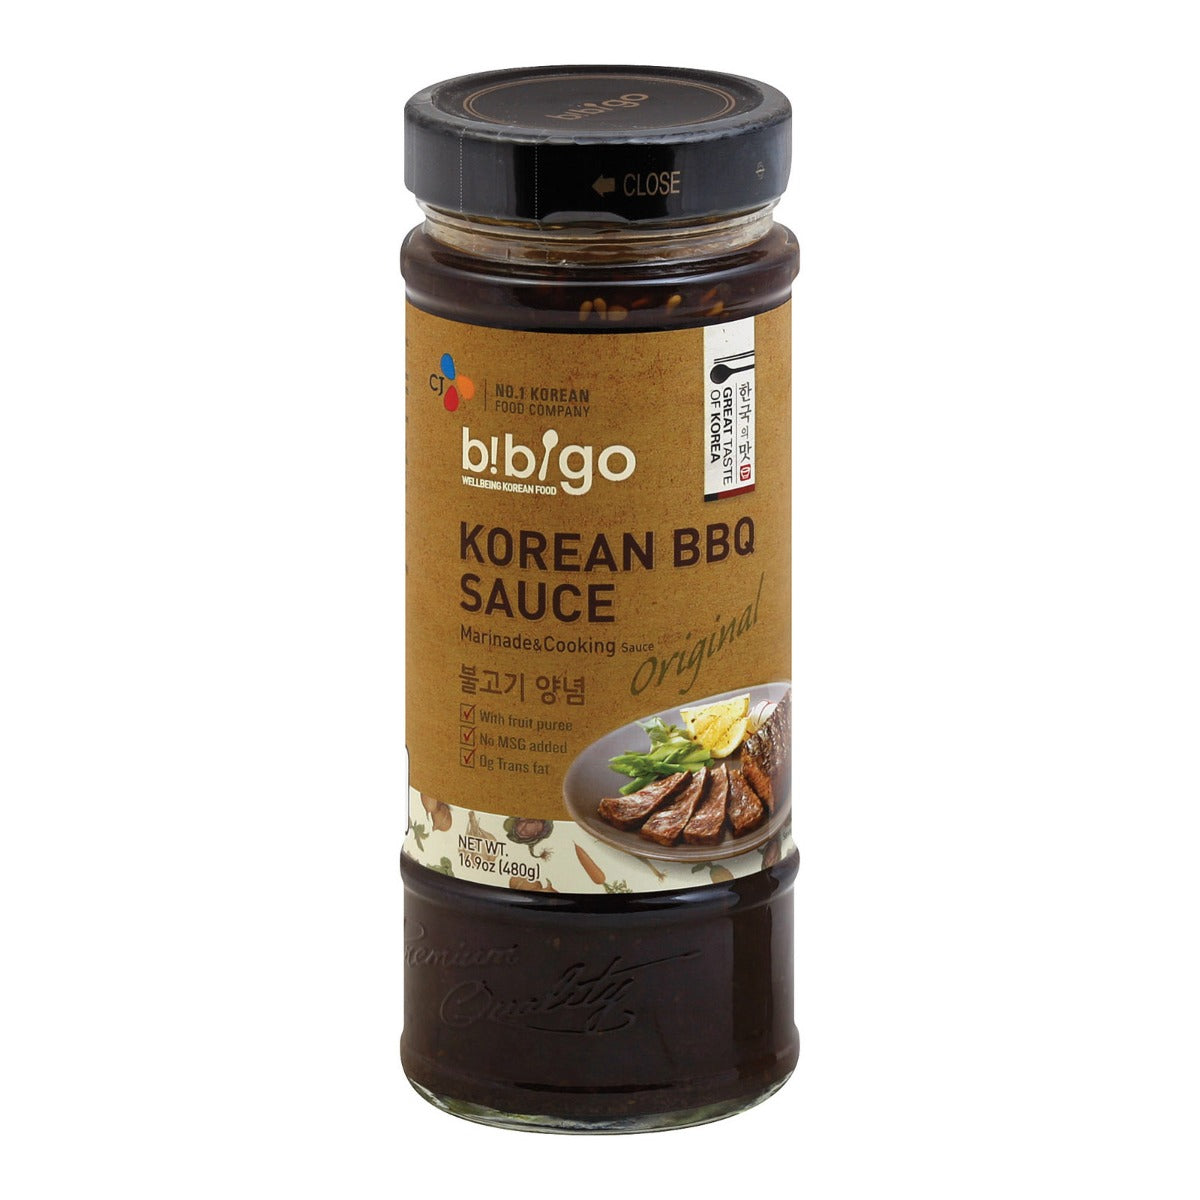 BIBIGO: Korean BBQ Sauce Original, 16.9 oz - Vending Business Solutions